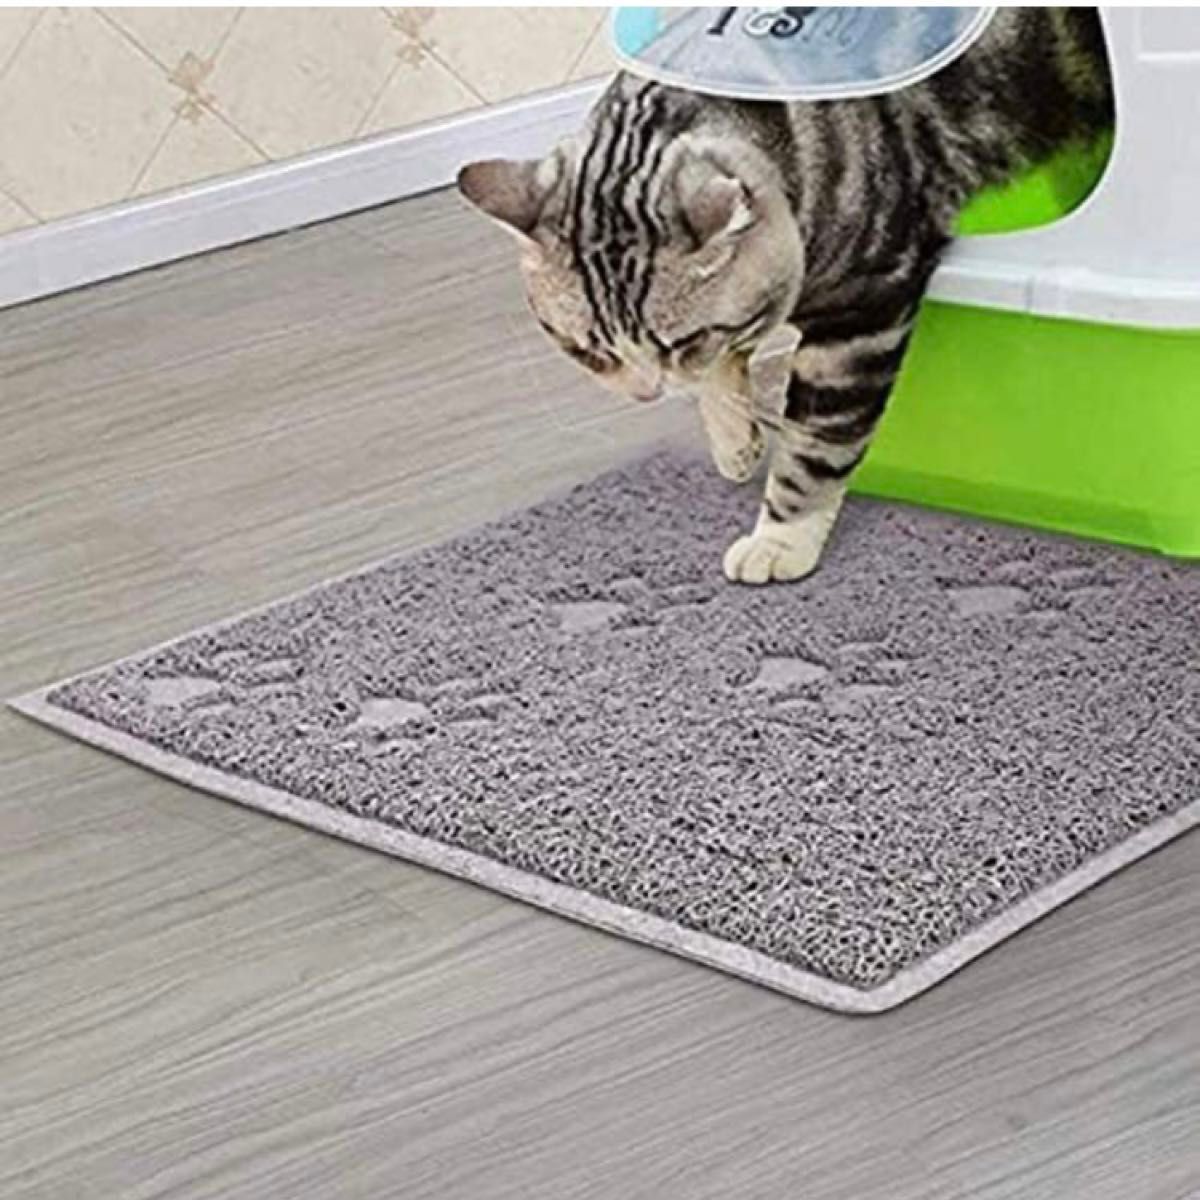 トイレ マット 猫用砂取り ペット グレー ブラック 玄関 防臭 玄関マット ネコ 